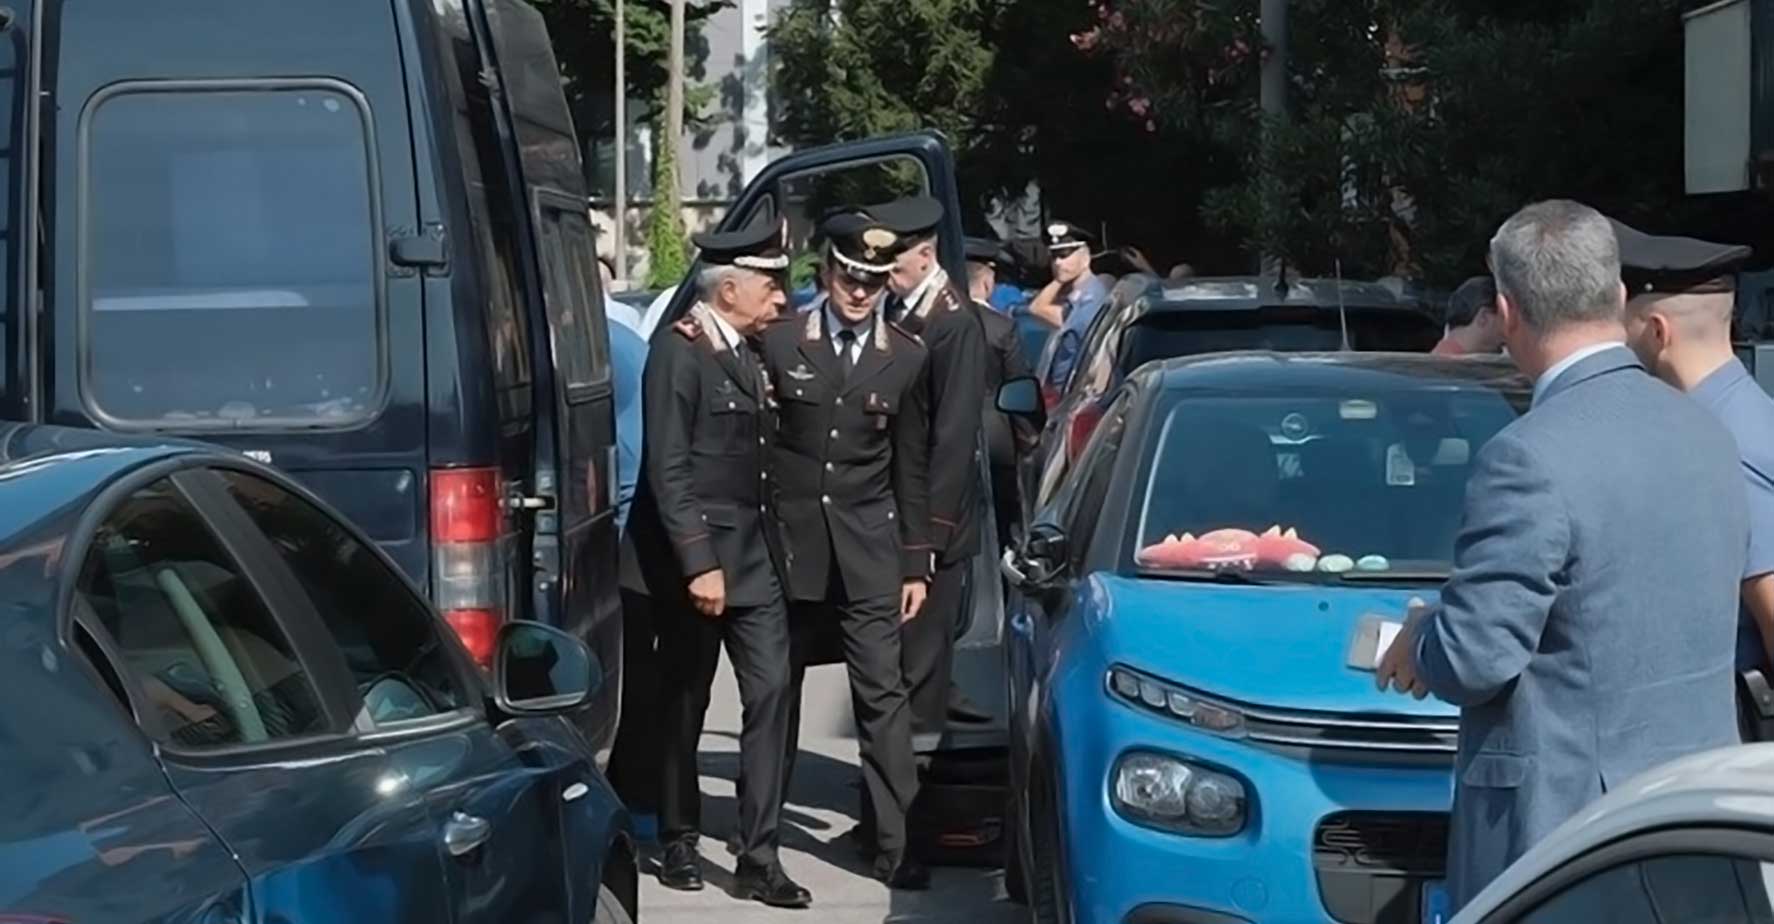 stalking - carabiniere investito a Padova da stalker dell'ex